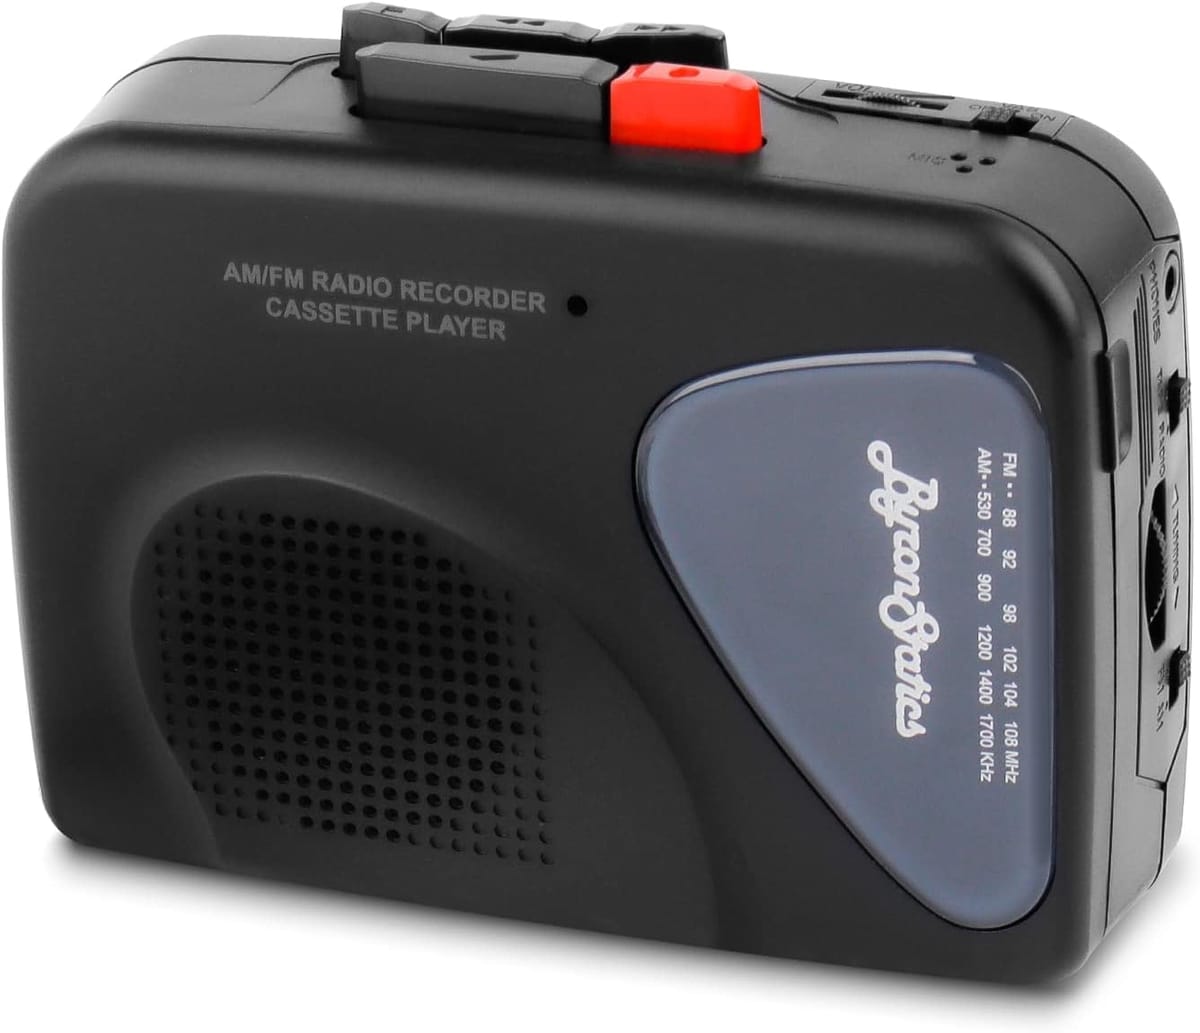 日本語説明書QRコード付き。ByronStaticsのポータブルカセットプレーヤーはAM/FMラジオも聴けて録音もできます。外部スピーカー、Φ3.5mmイヤホン付き。単3電池2本（別売り）またはUSB電源（付属）で駆動。取り外し可能なベルトクリップ付き。音声起動システム（VAS)。ラジオの録音ではVAS スイッチをオフにする必要があります。 コンパクトで持ち運びが楽です。 取り外し可能なベルトクリップ付き。 巻き戻し、早送り、停止、再生、録音ボタンは簡単操作できます。 あらゆる種類のテープに対応。 どこででも便利に音楽を楽しめます。 Φ3.5mmイヤホン(付属)。 このカセットプレーヤーで過去の思い出の音楽を聴くことができます。 単3電池2本 (別売り) またはUSB電源 (付属)で駆動します。 USB 電源を使用する場合は電池を取り外すことをお勧めします。 ラジオを録音する際は音声を感知して自動的に録音をスタートさせるVASをOFFにする必要があります。日本語説明書はQRコードからダウンロードしてください。